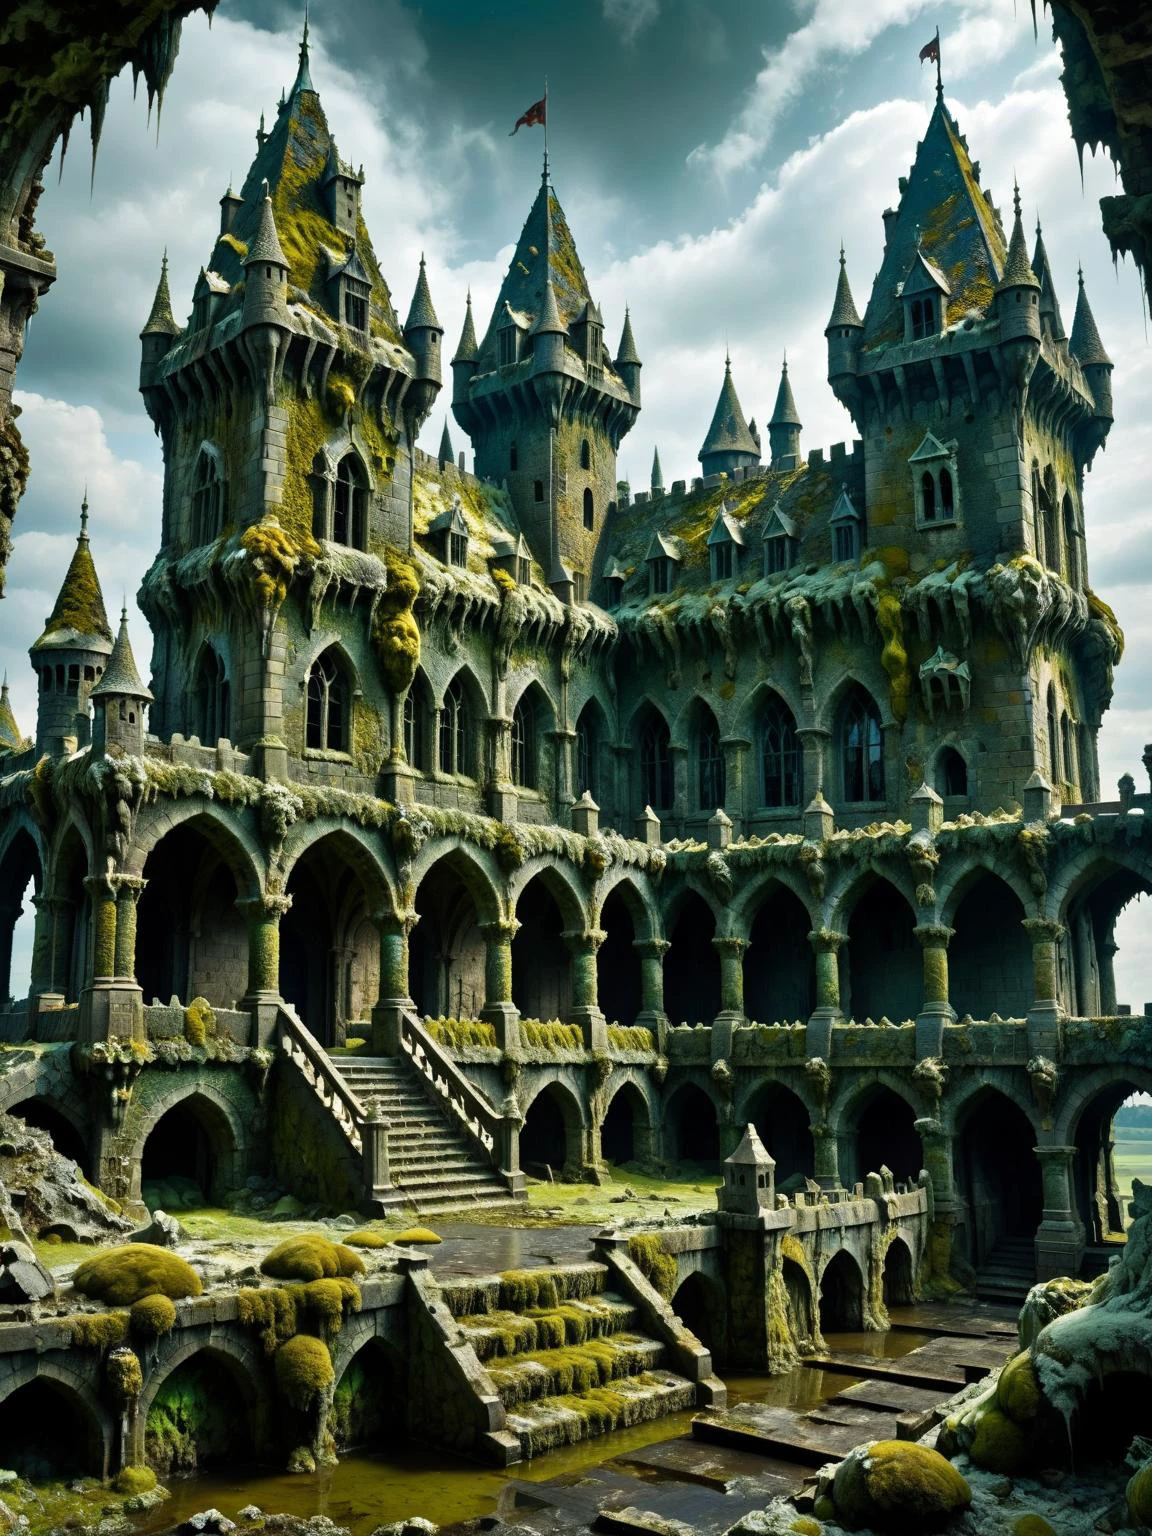 molde-ral, Un campo de batalla de fantasía inspirado en moldes, con guerreros, dragones, y castillos todos hechos de forma artística., dinámica estética mohosa, cinematográfico, Obra maestra, Intrincado,gótico, HDR 